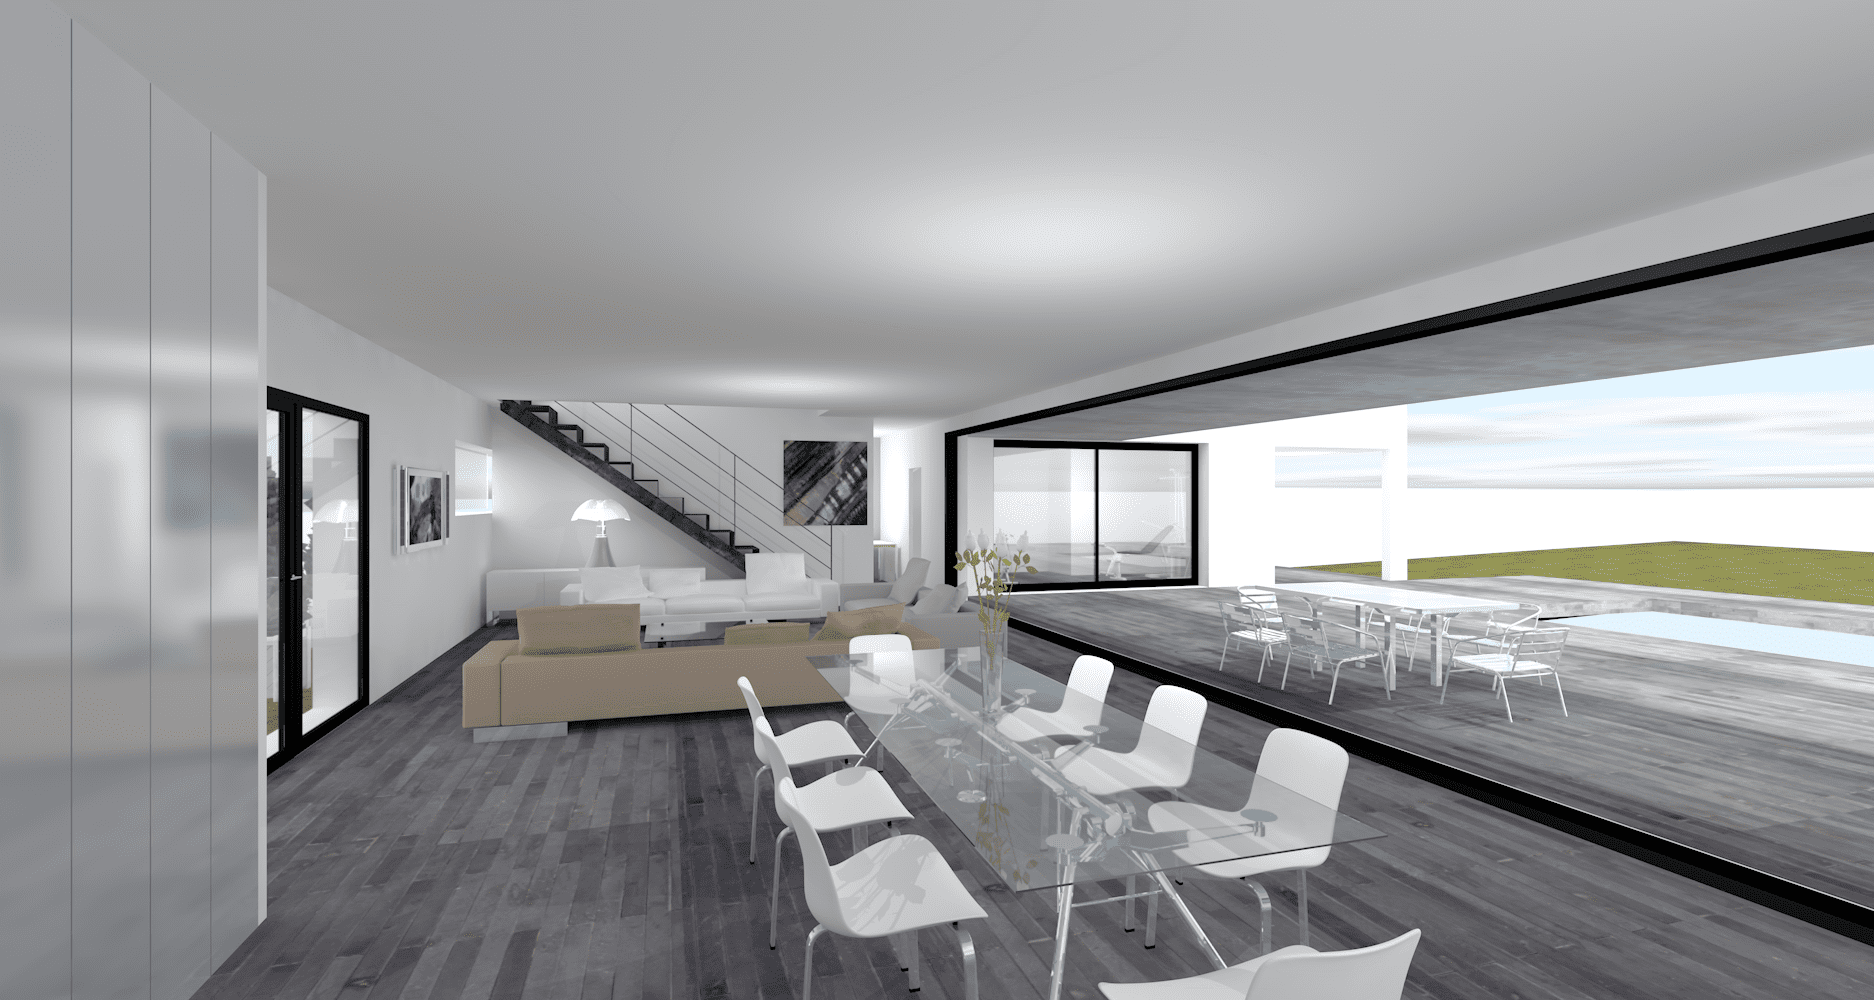 Maison contemporaine 207 m² - Architecte Claude Veyret Lyon